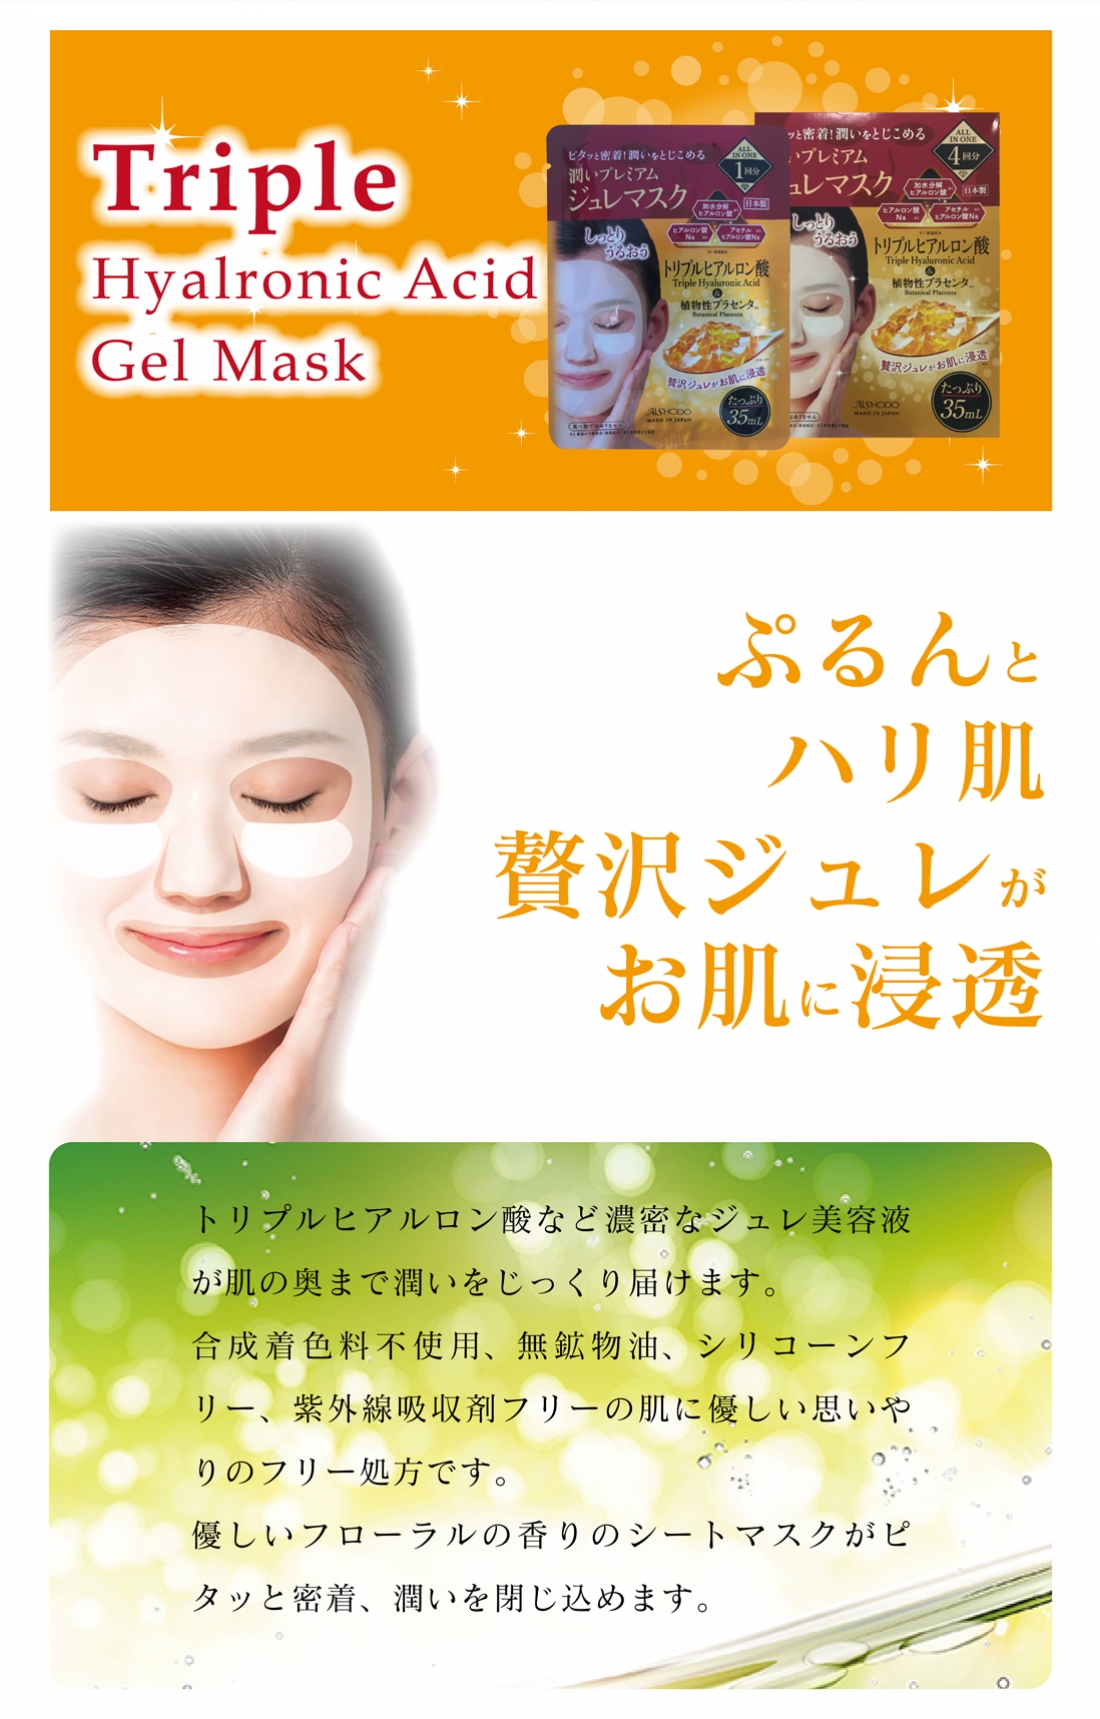 トリプルヒアルロン酸ジュレマスク
Triple Hyalronic Acid Gel Mask